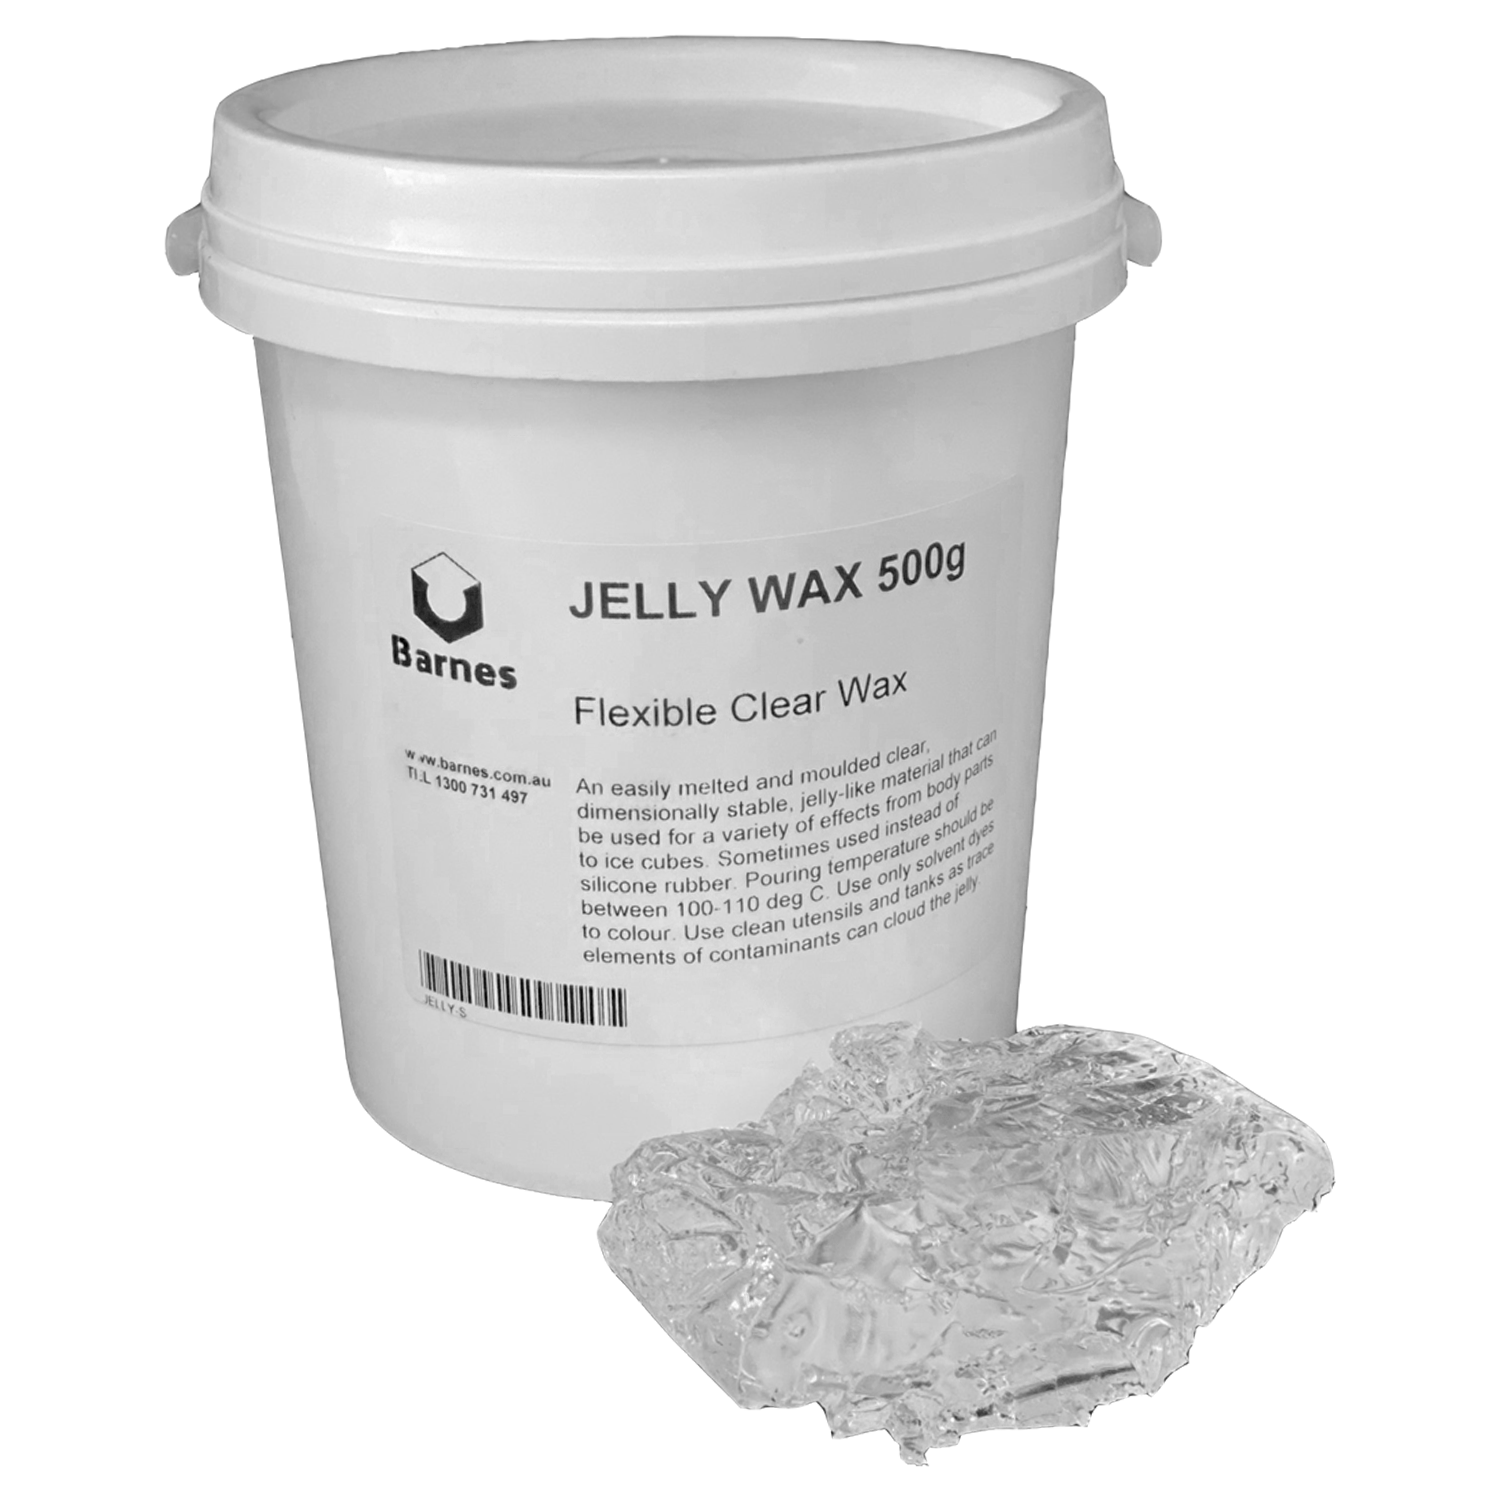 Jelly Wax - Barnes